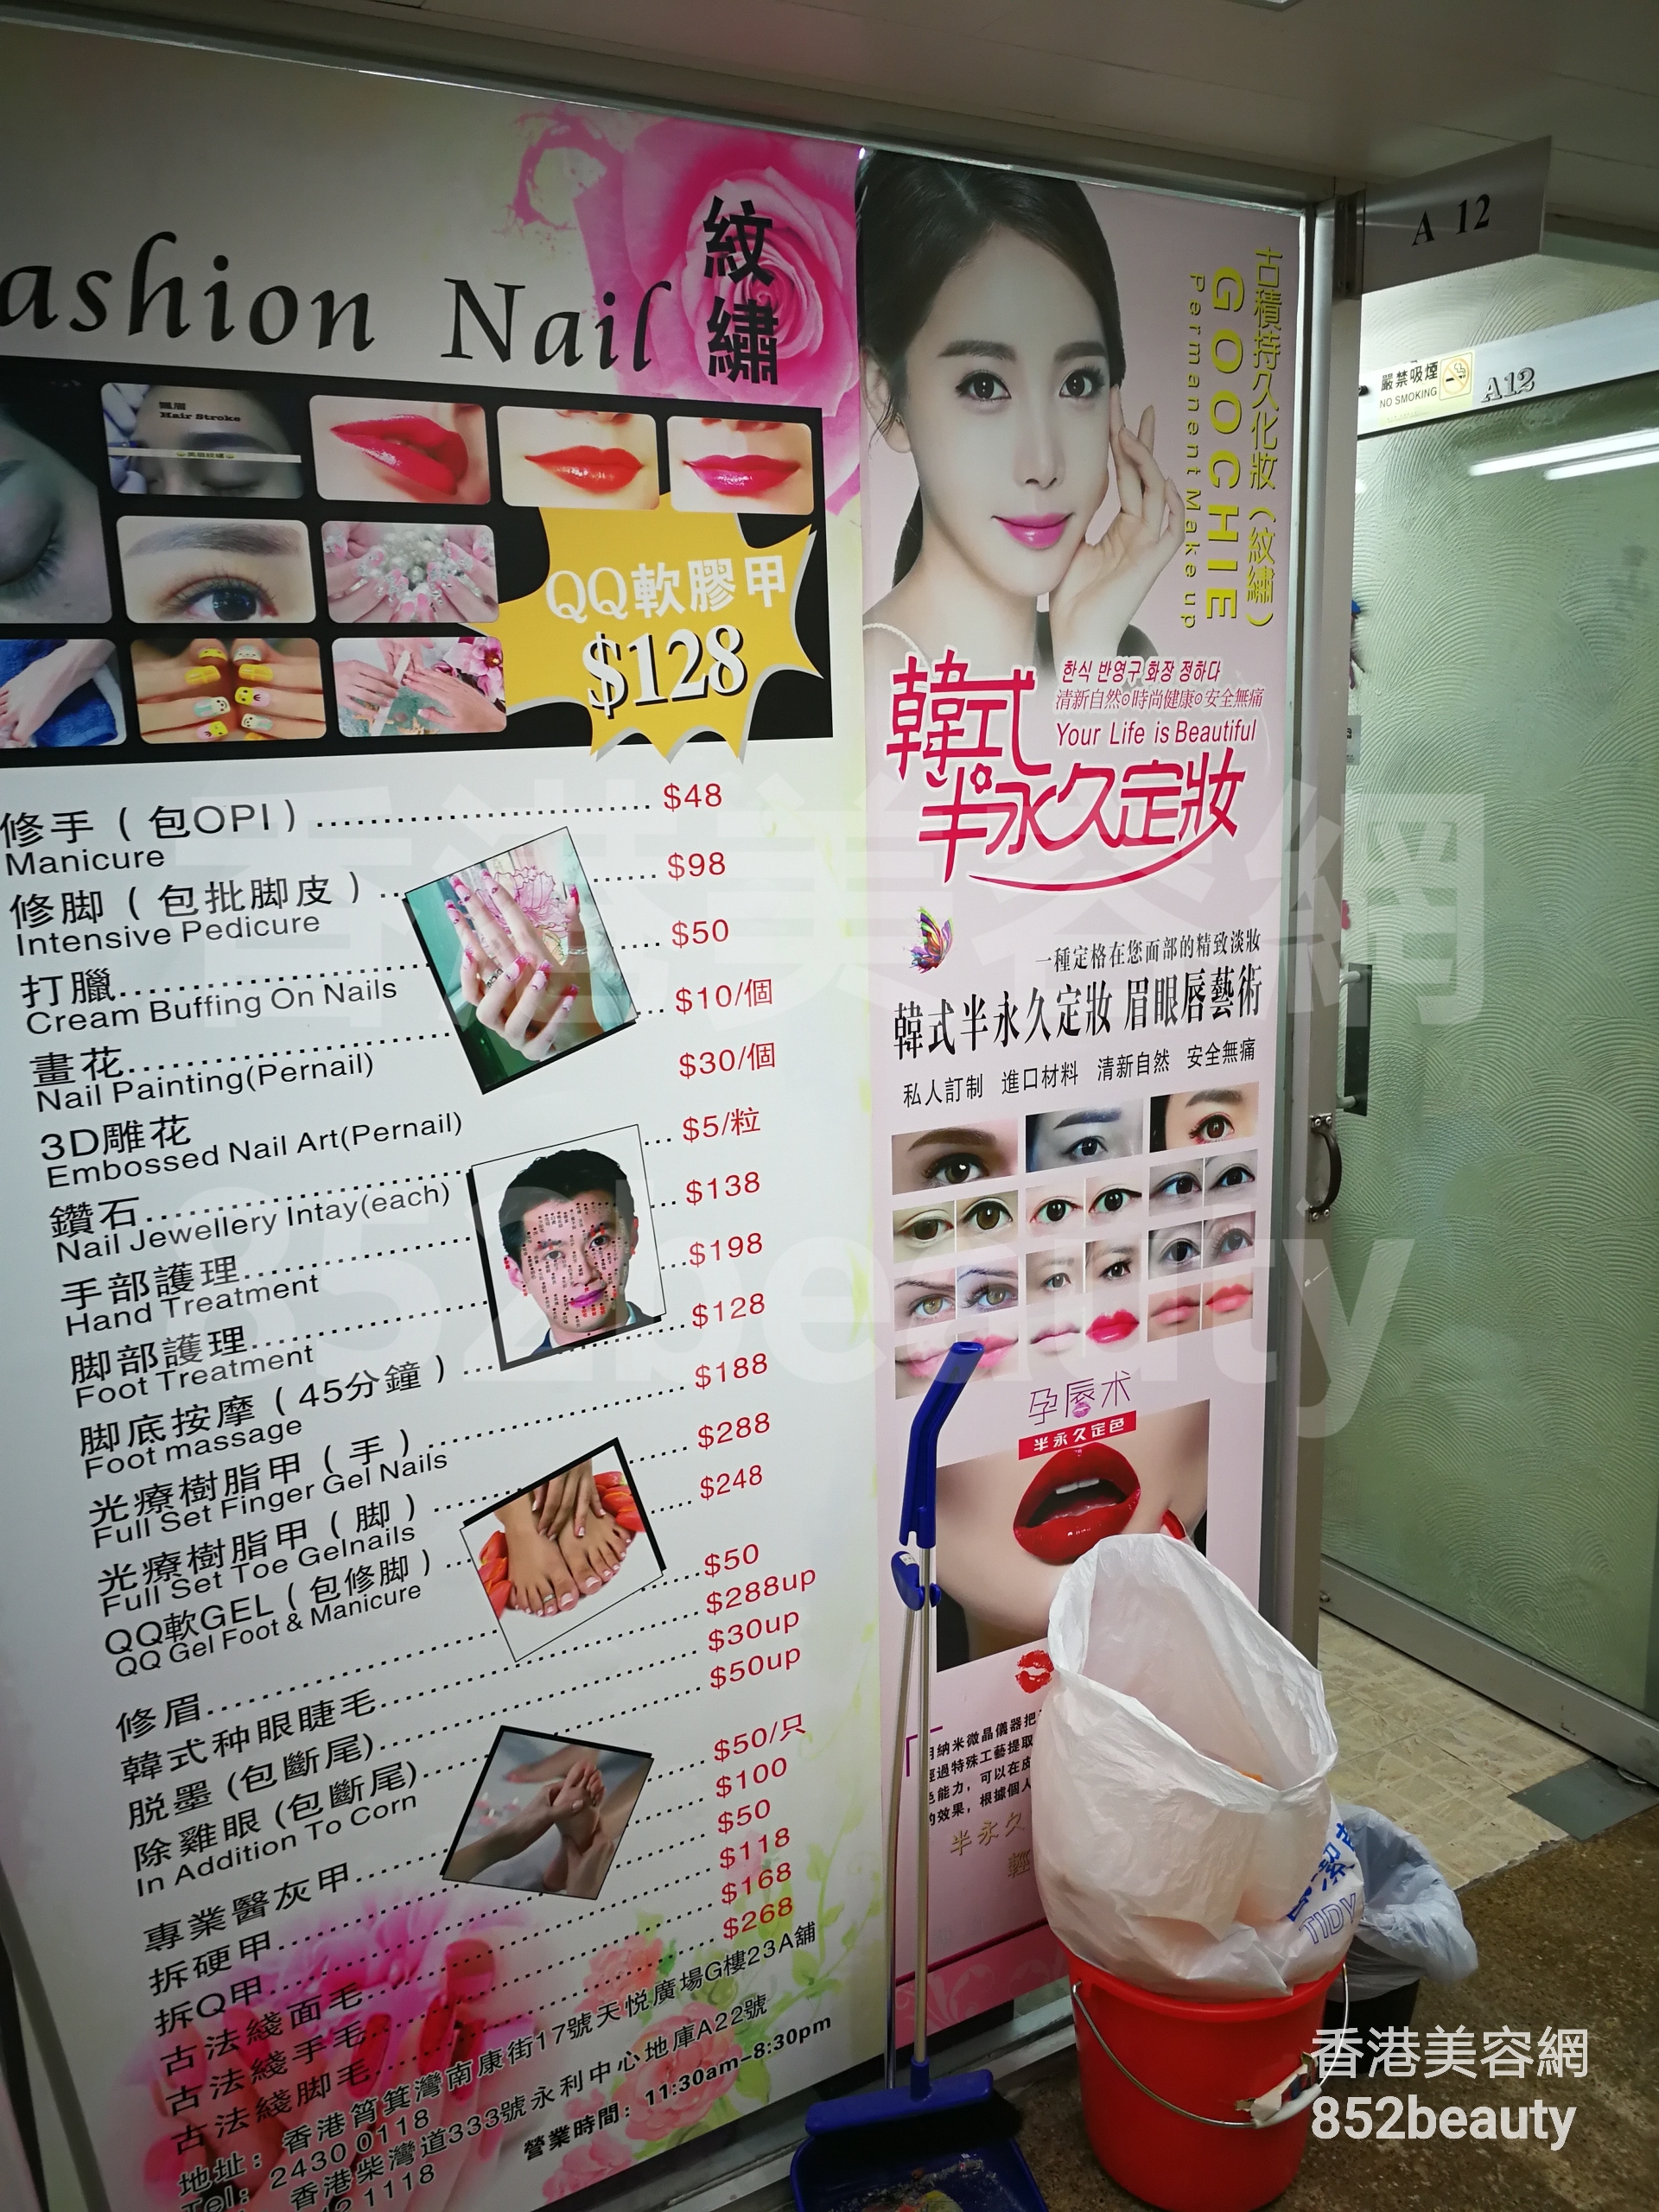 美容院 Beauty Salon: Fashion Nail